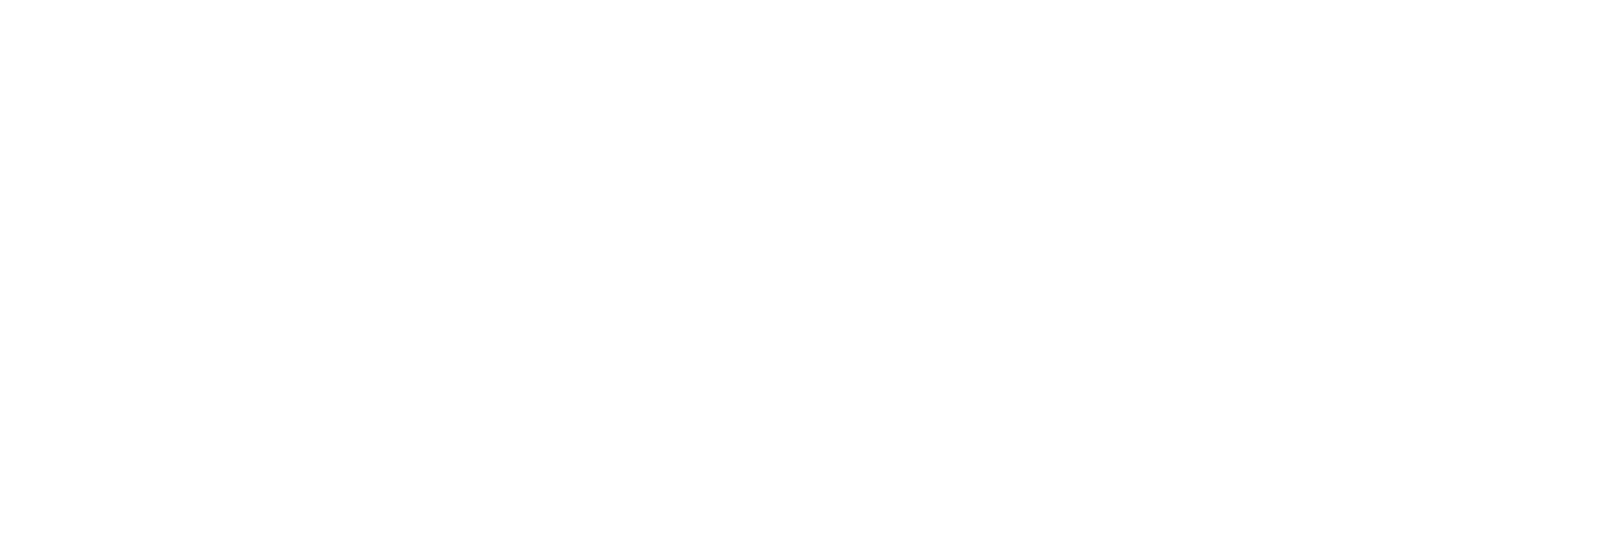 KTM Top Models & History Of The Brand | First KTM Duke Model - YouTube